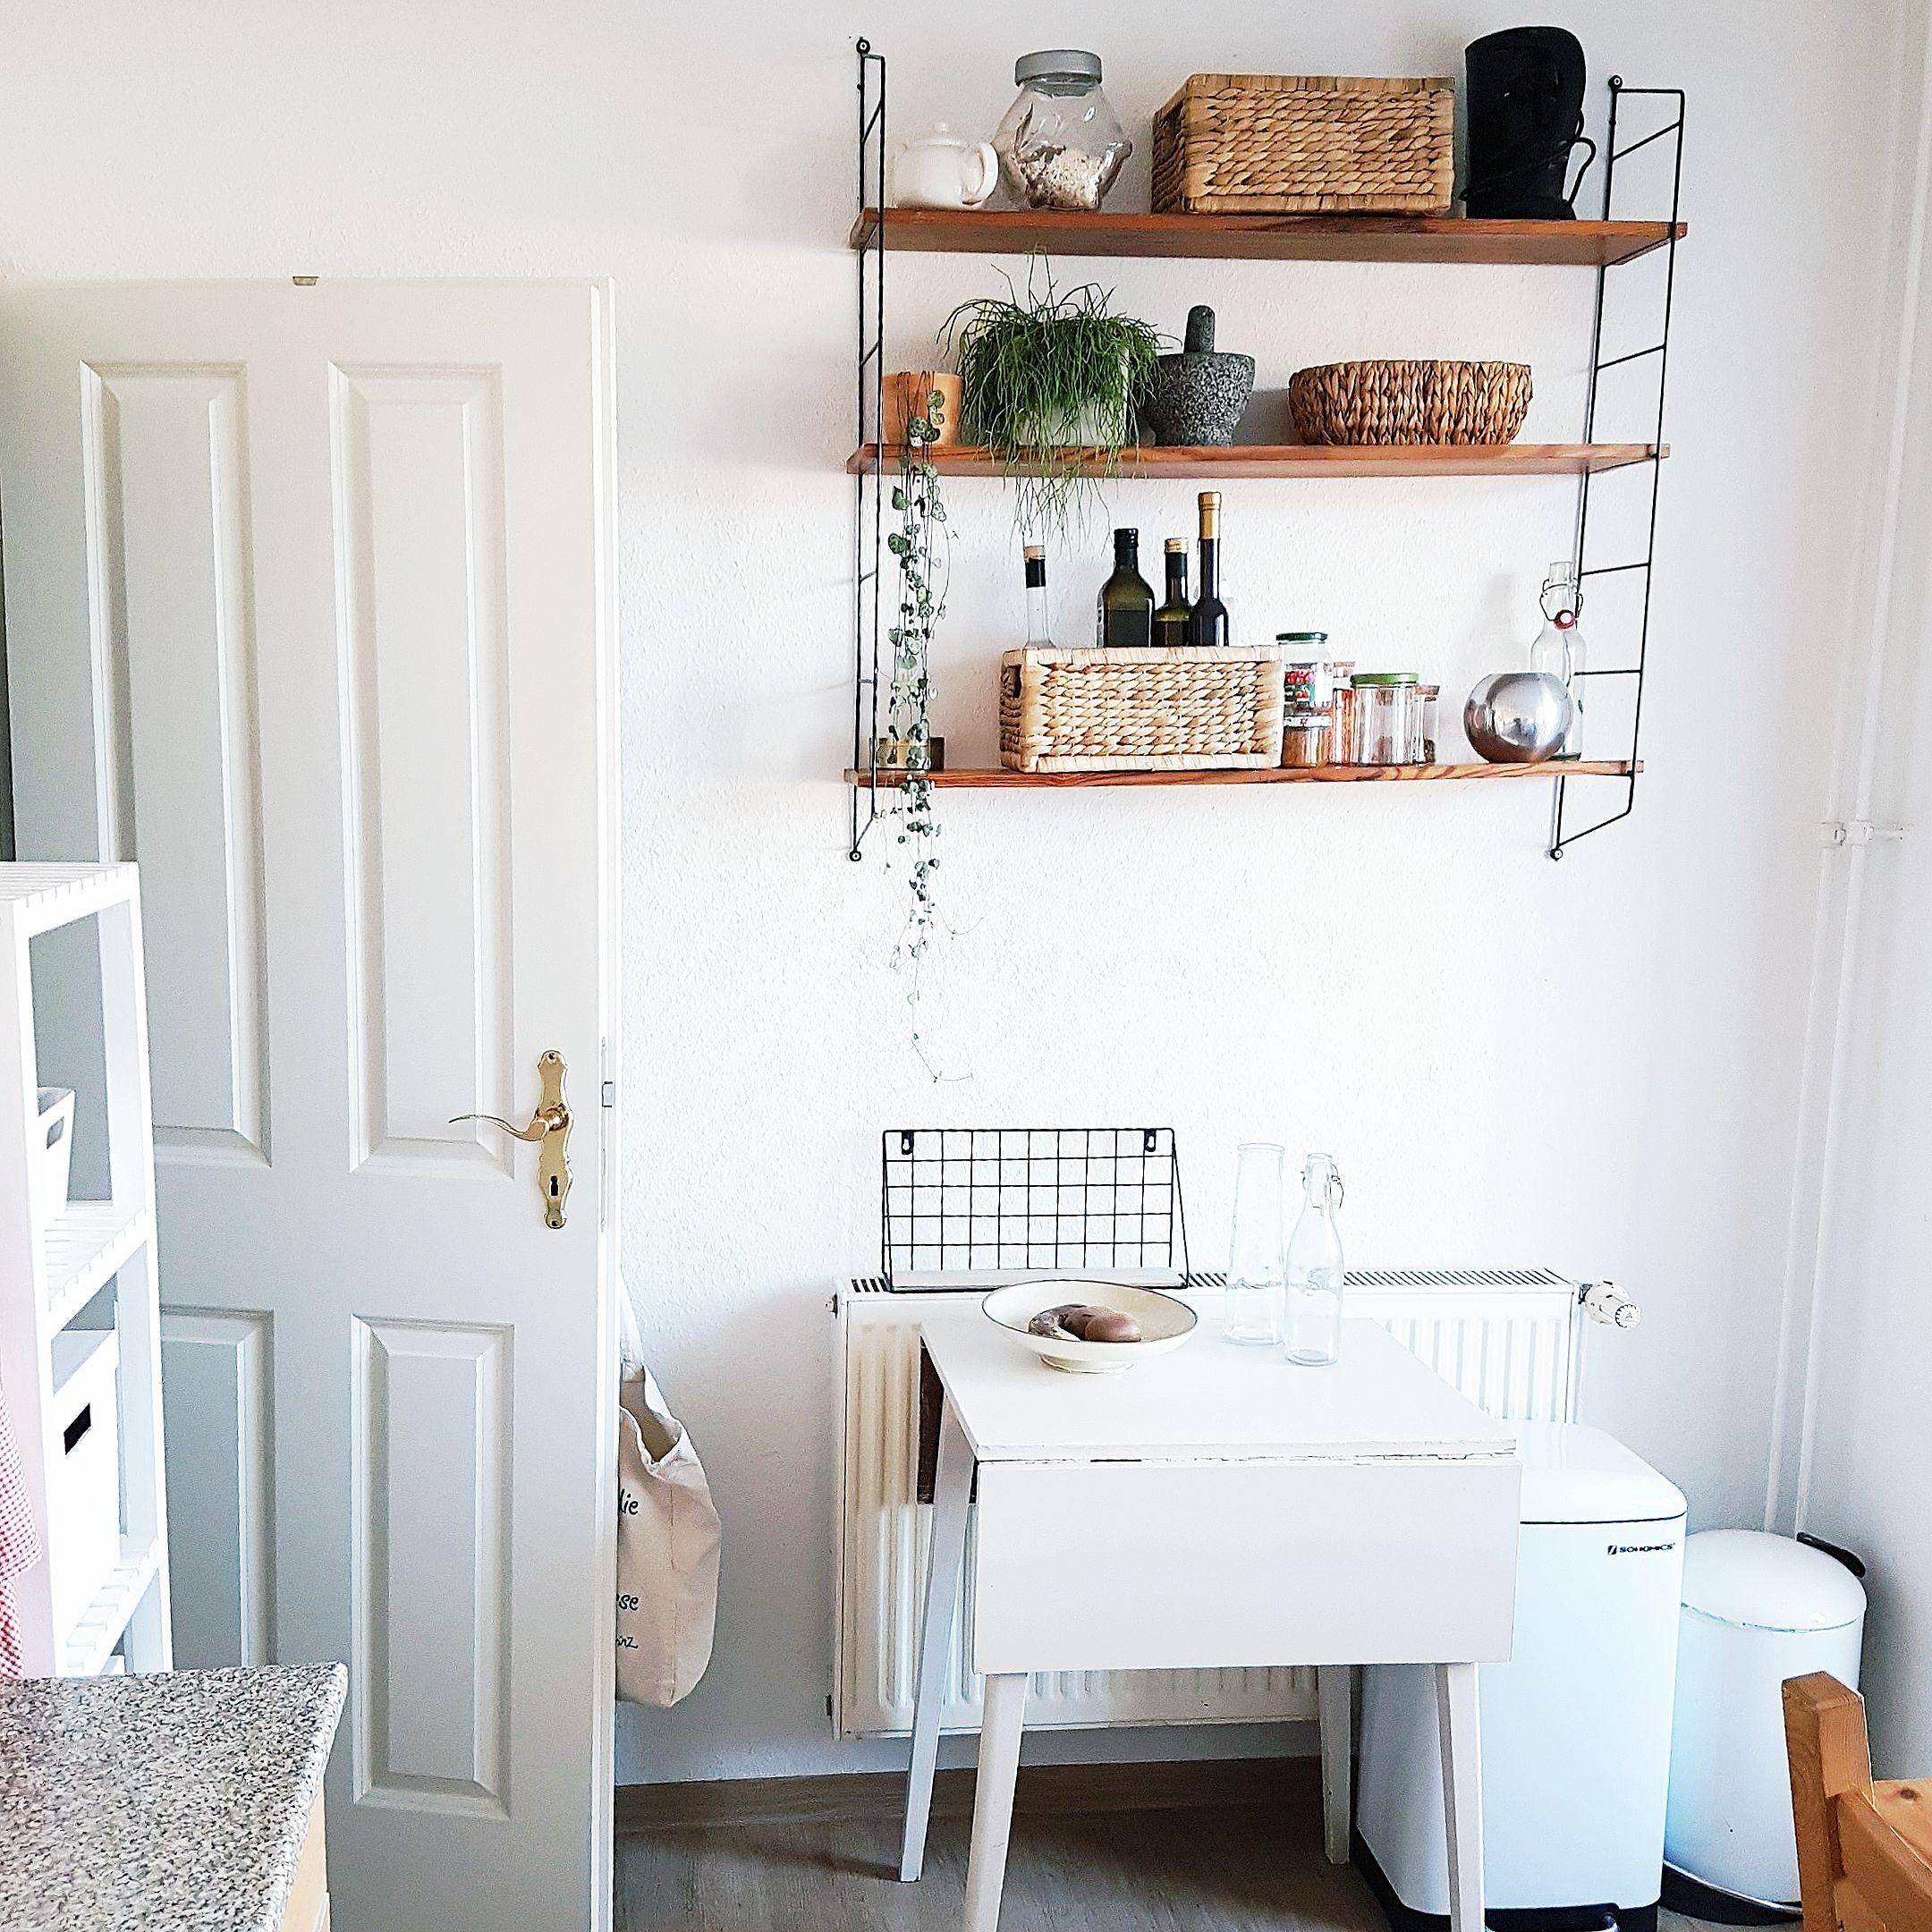 Stringregal von Oma, Tisch und Schrank vom Sperrmüll 😊 #kitchen #stringregal #küche #secondhandfurniture